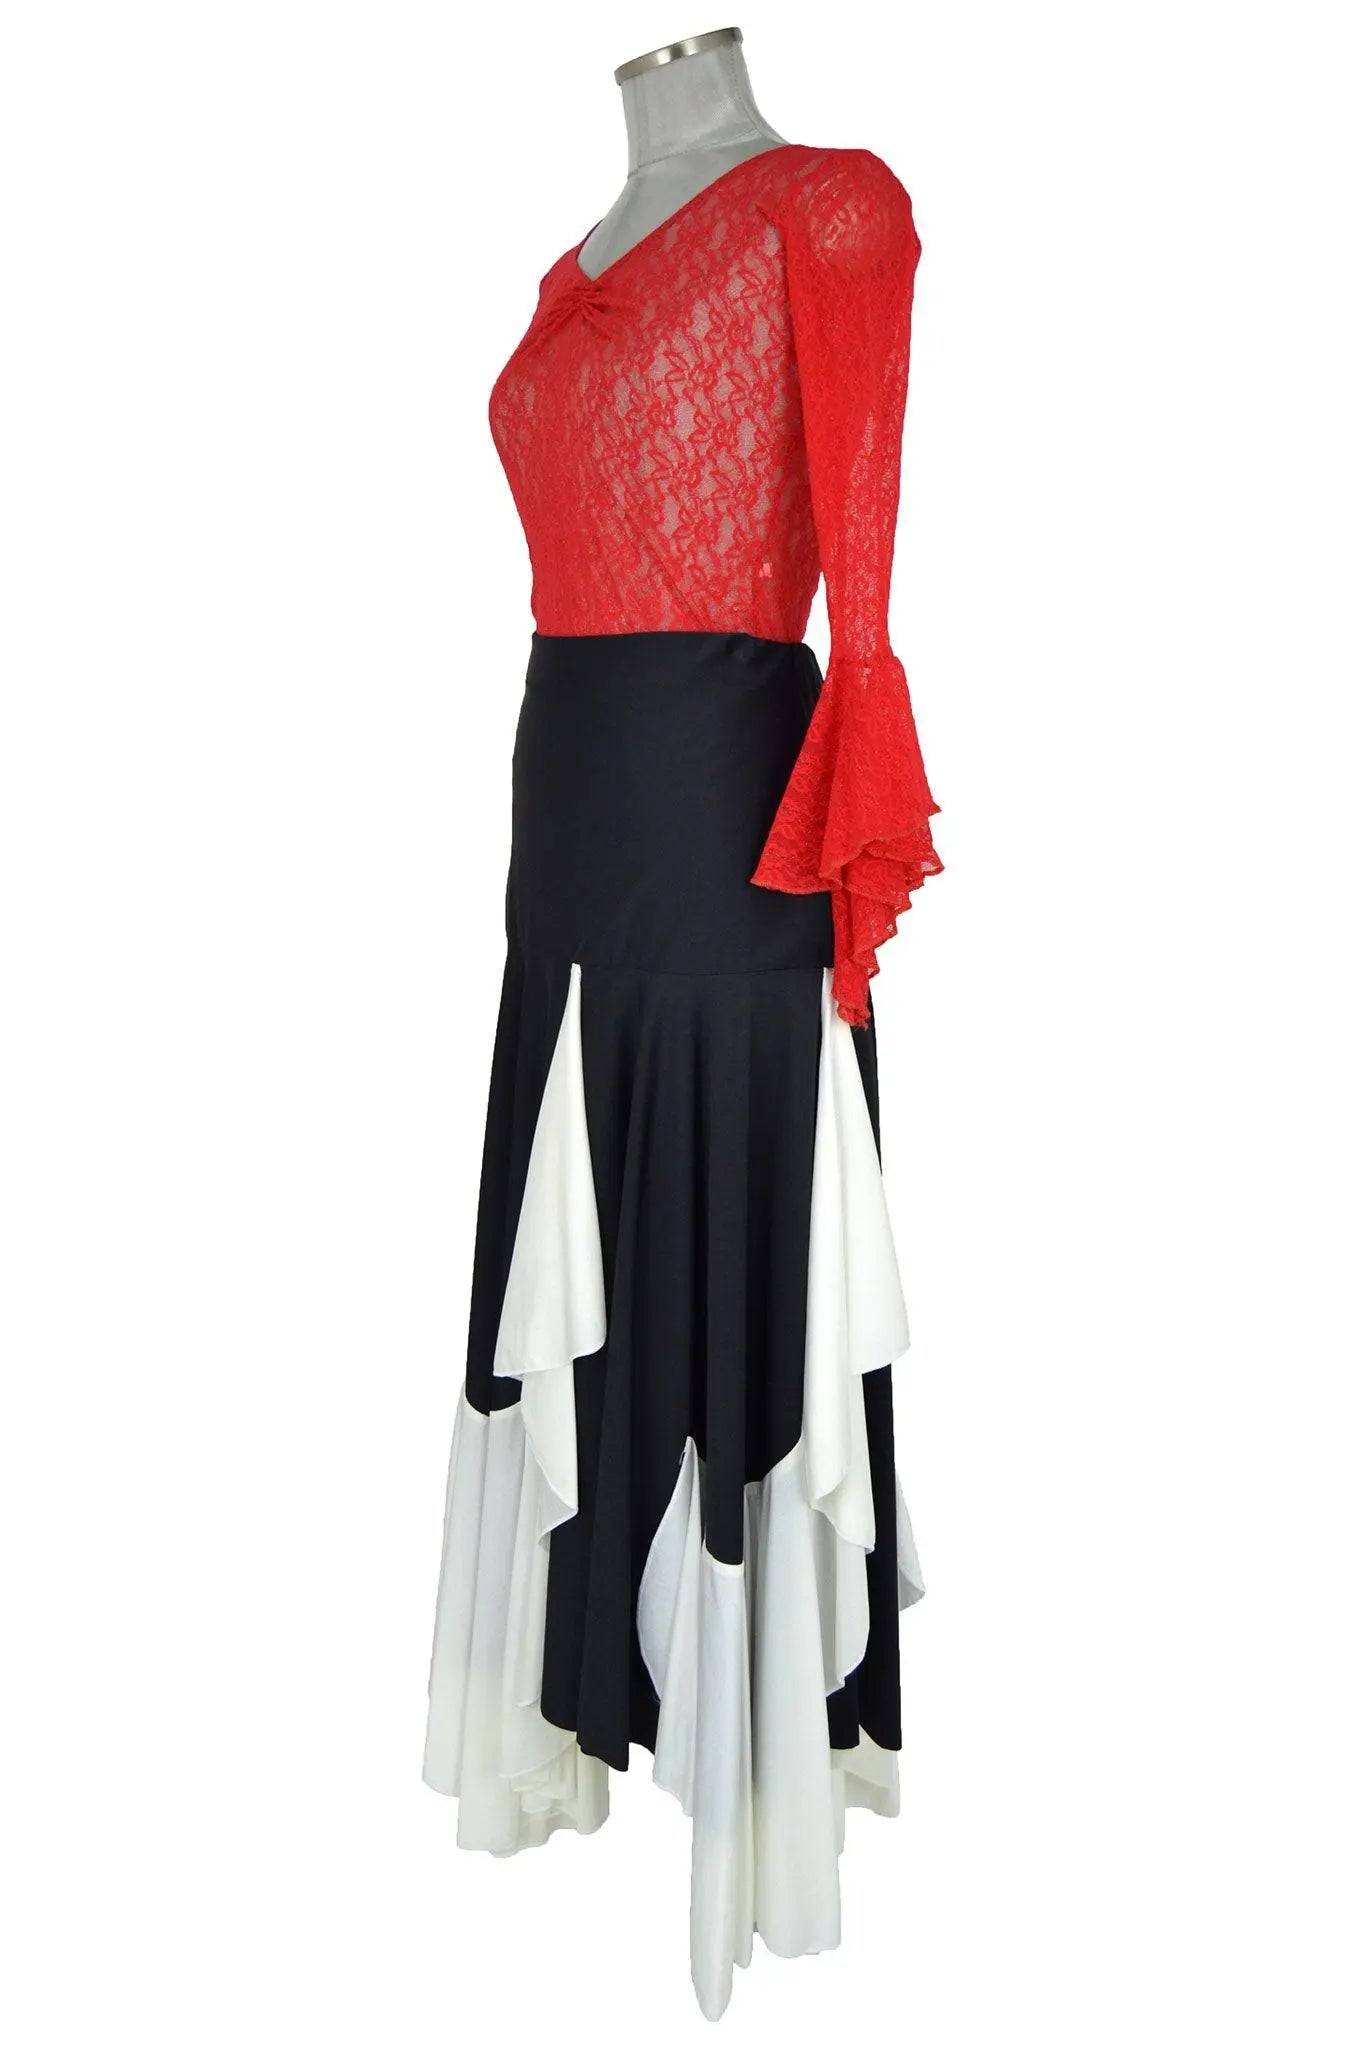 Noleggio abito donna per Flamenco, balletti lyrical o modern - danza